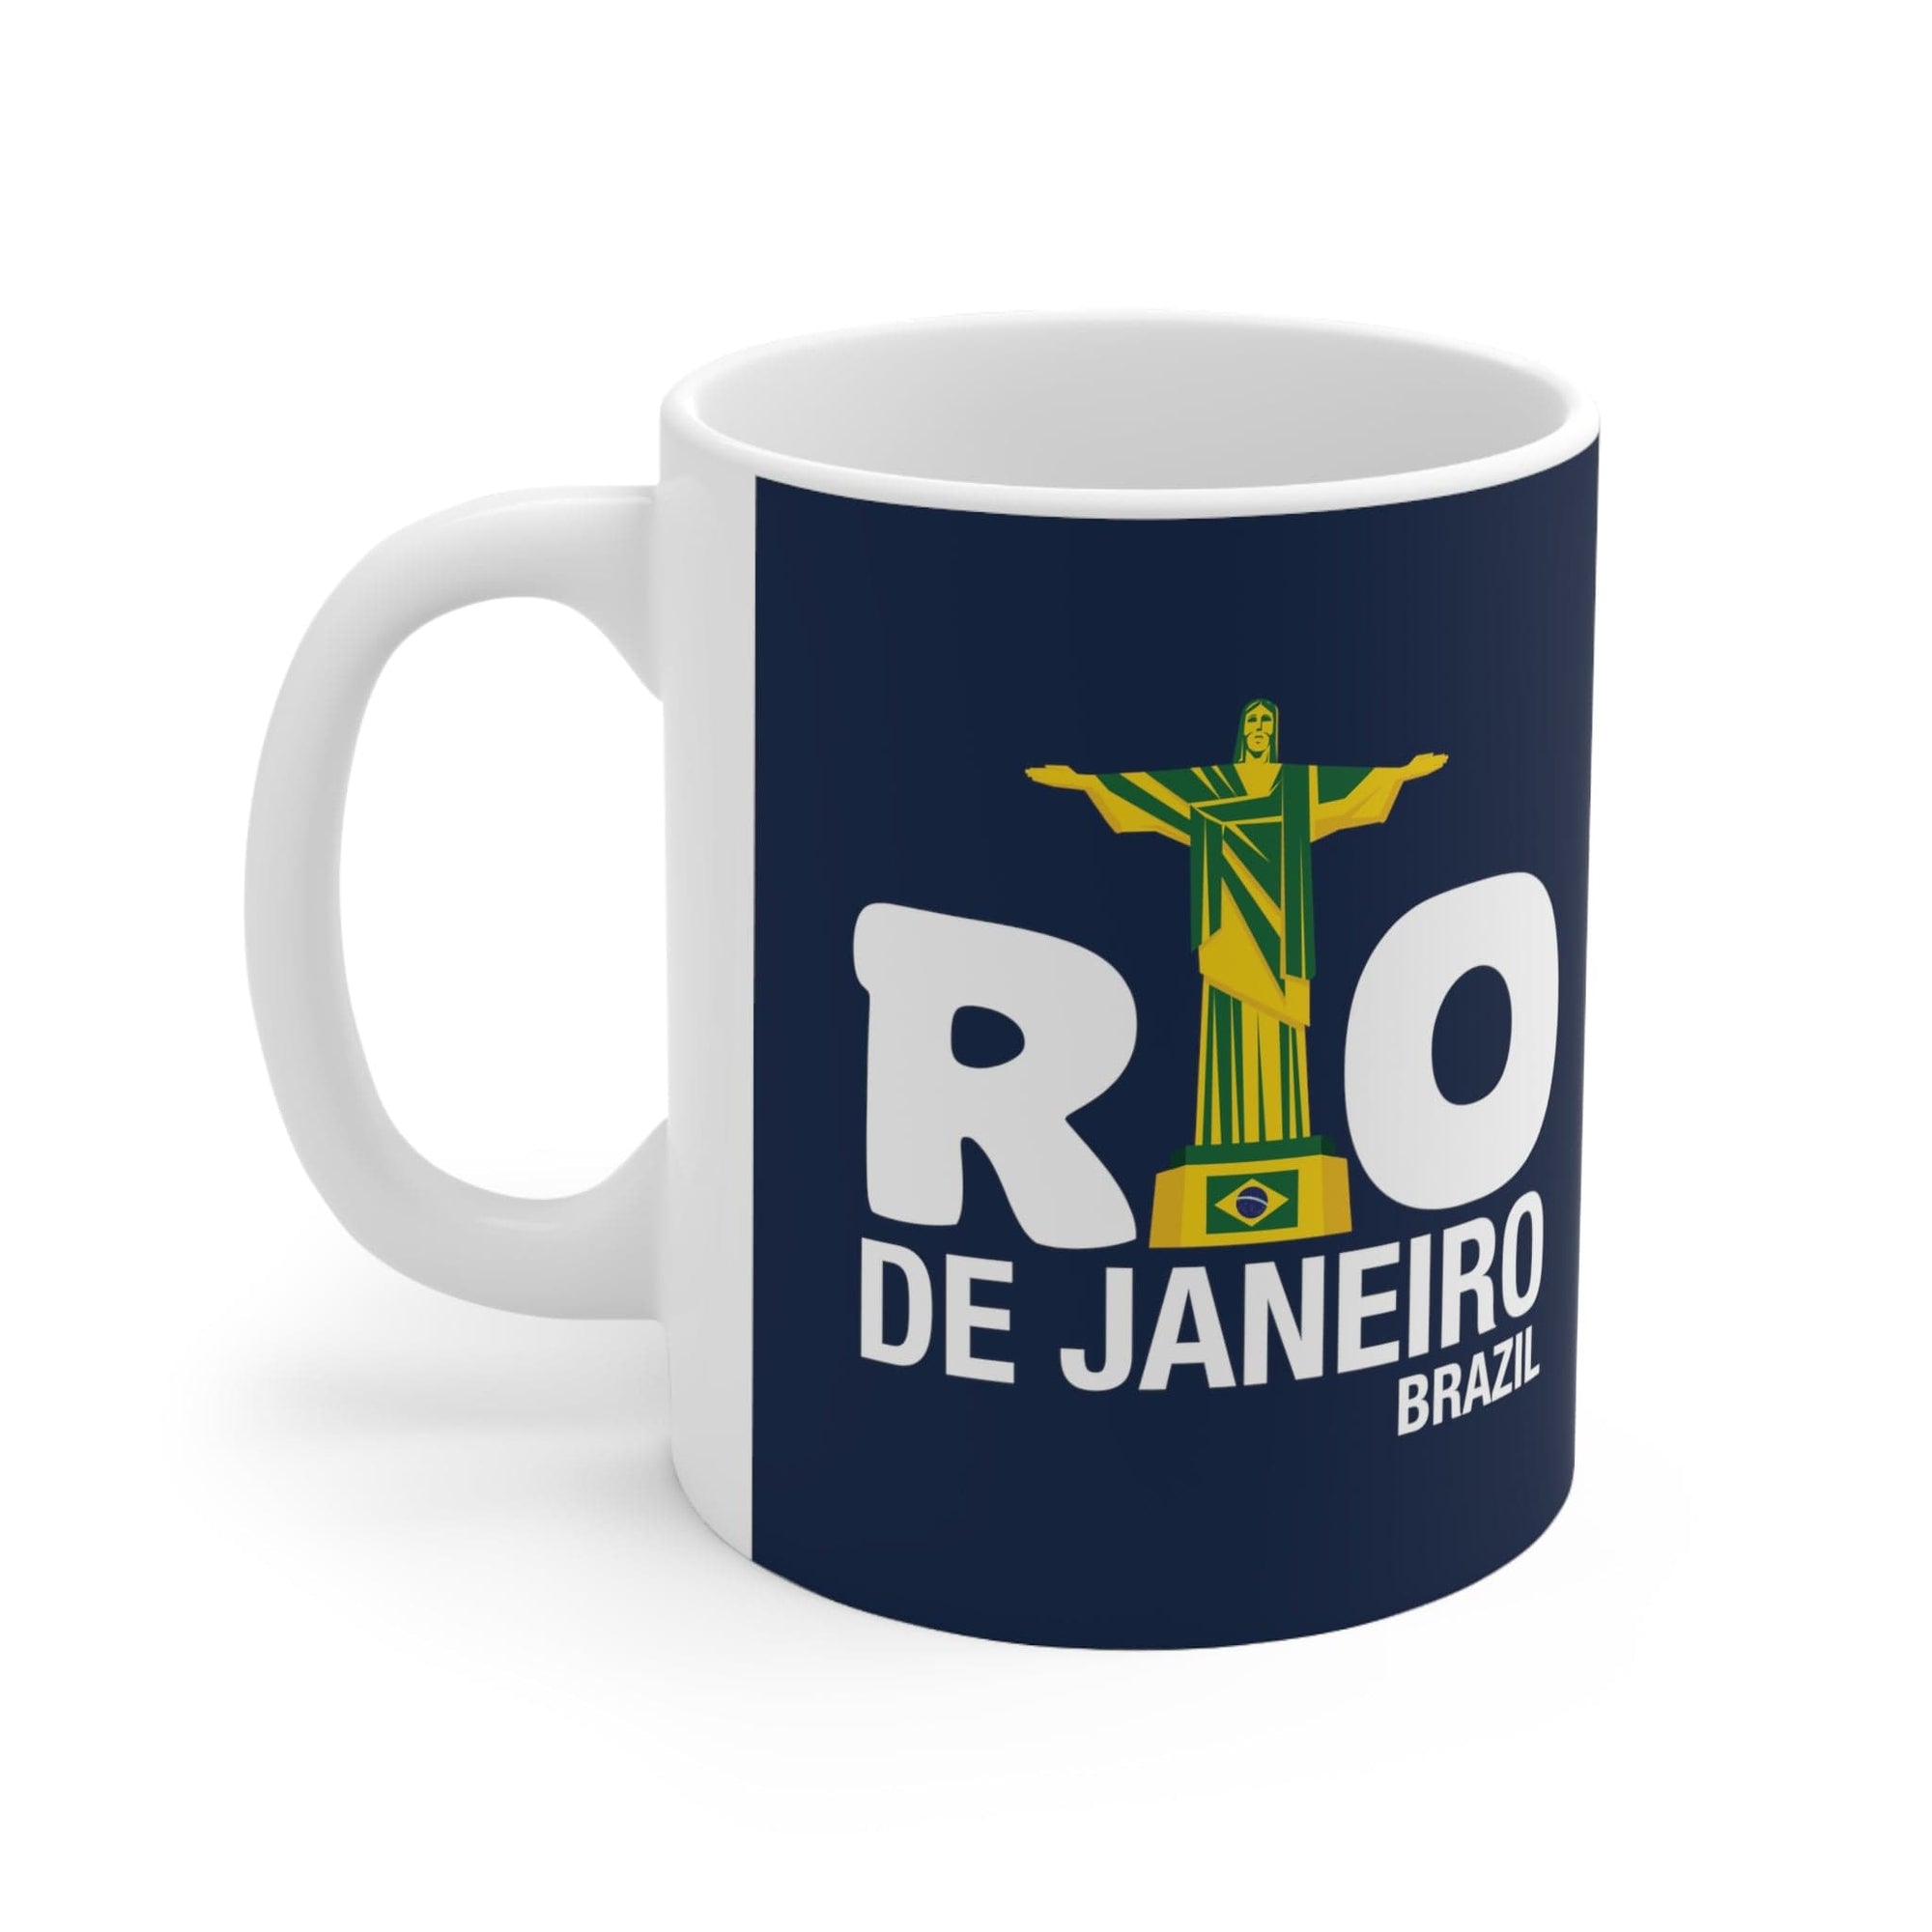 RIO de JANEIRO - Awesome Ceramic Mug, Exclusive Design